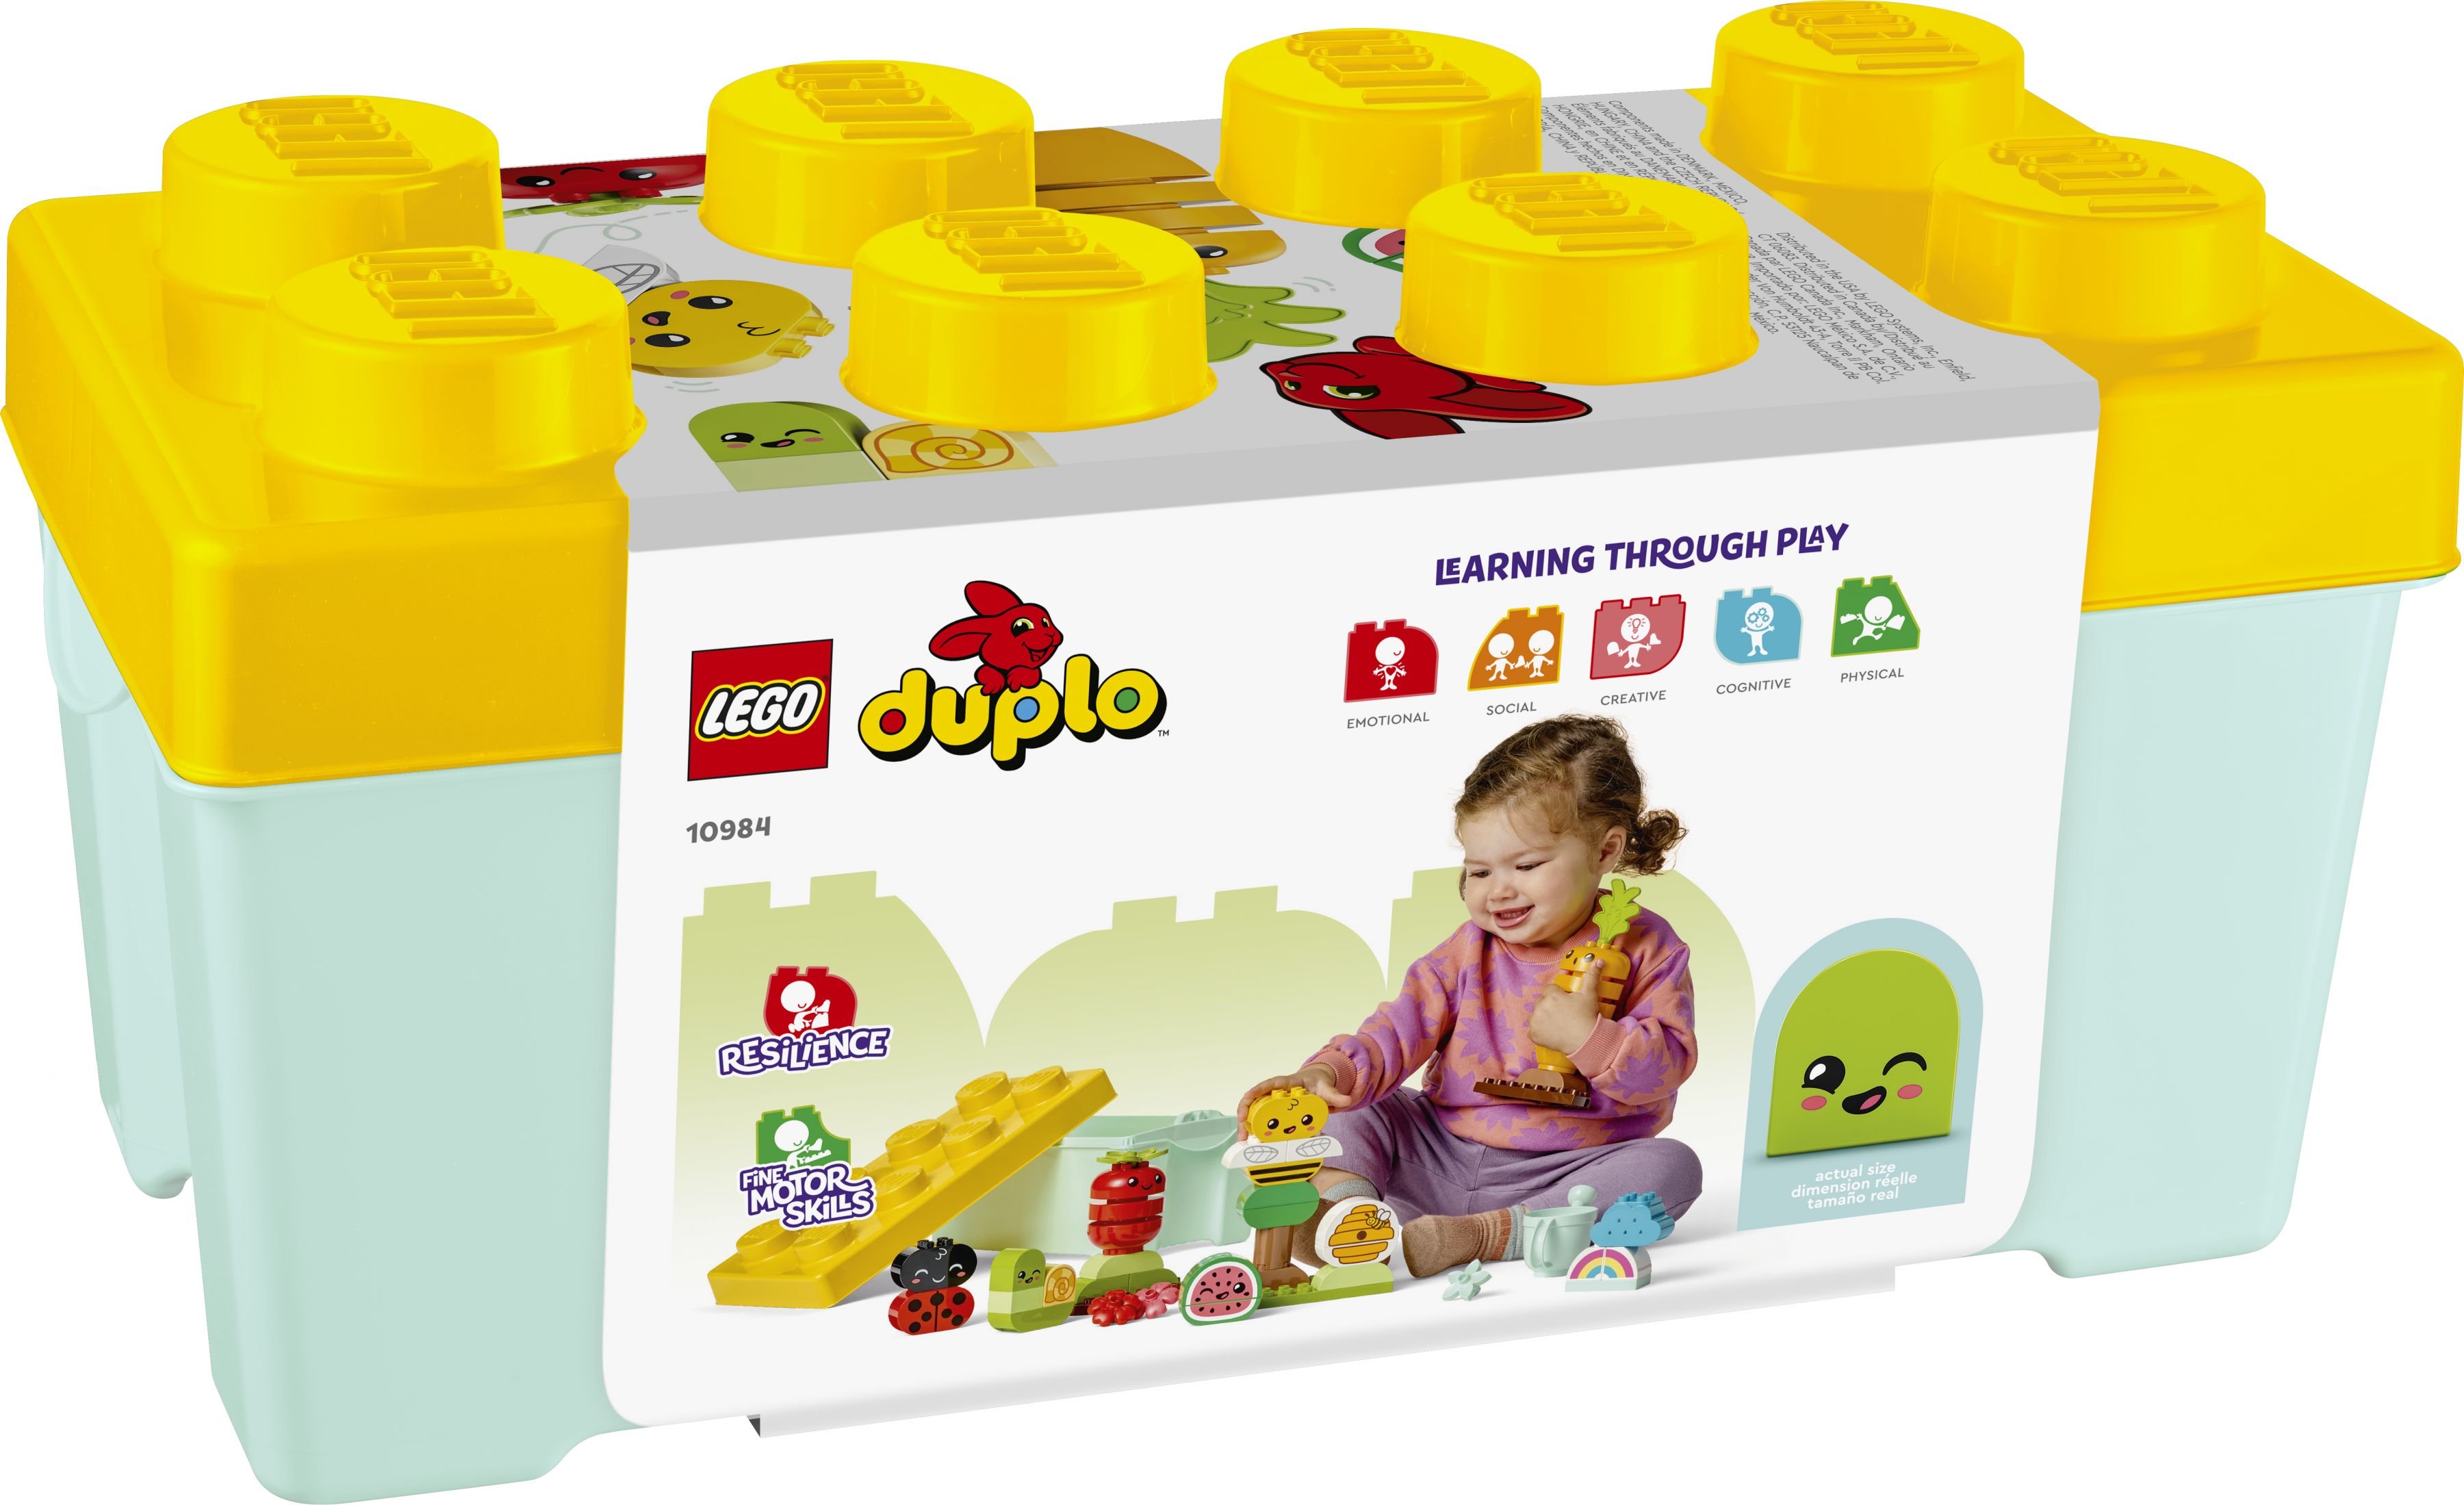 LEGO Duplo 10984 Biogarten LEGO_10984_Box5_v39.jpg